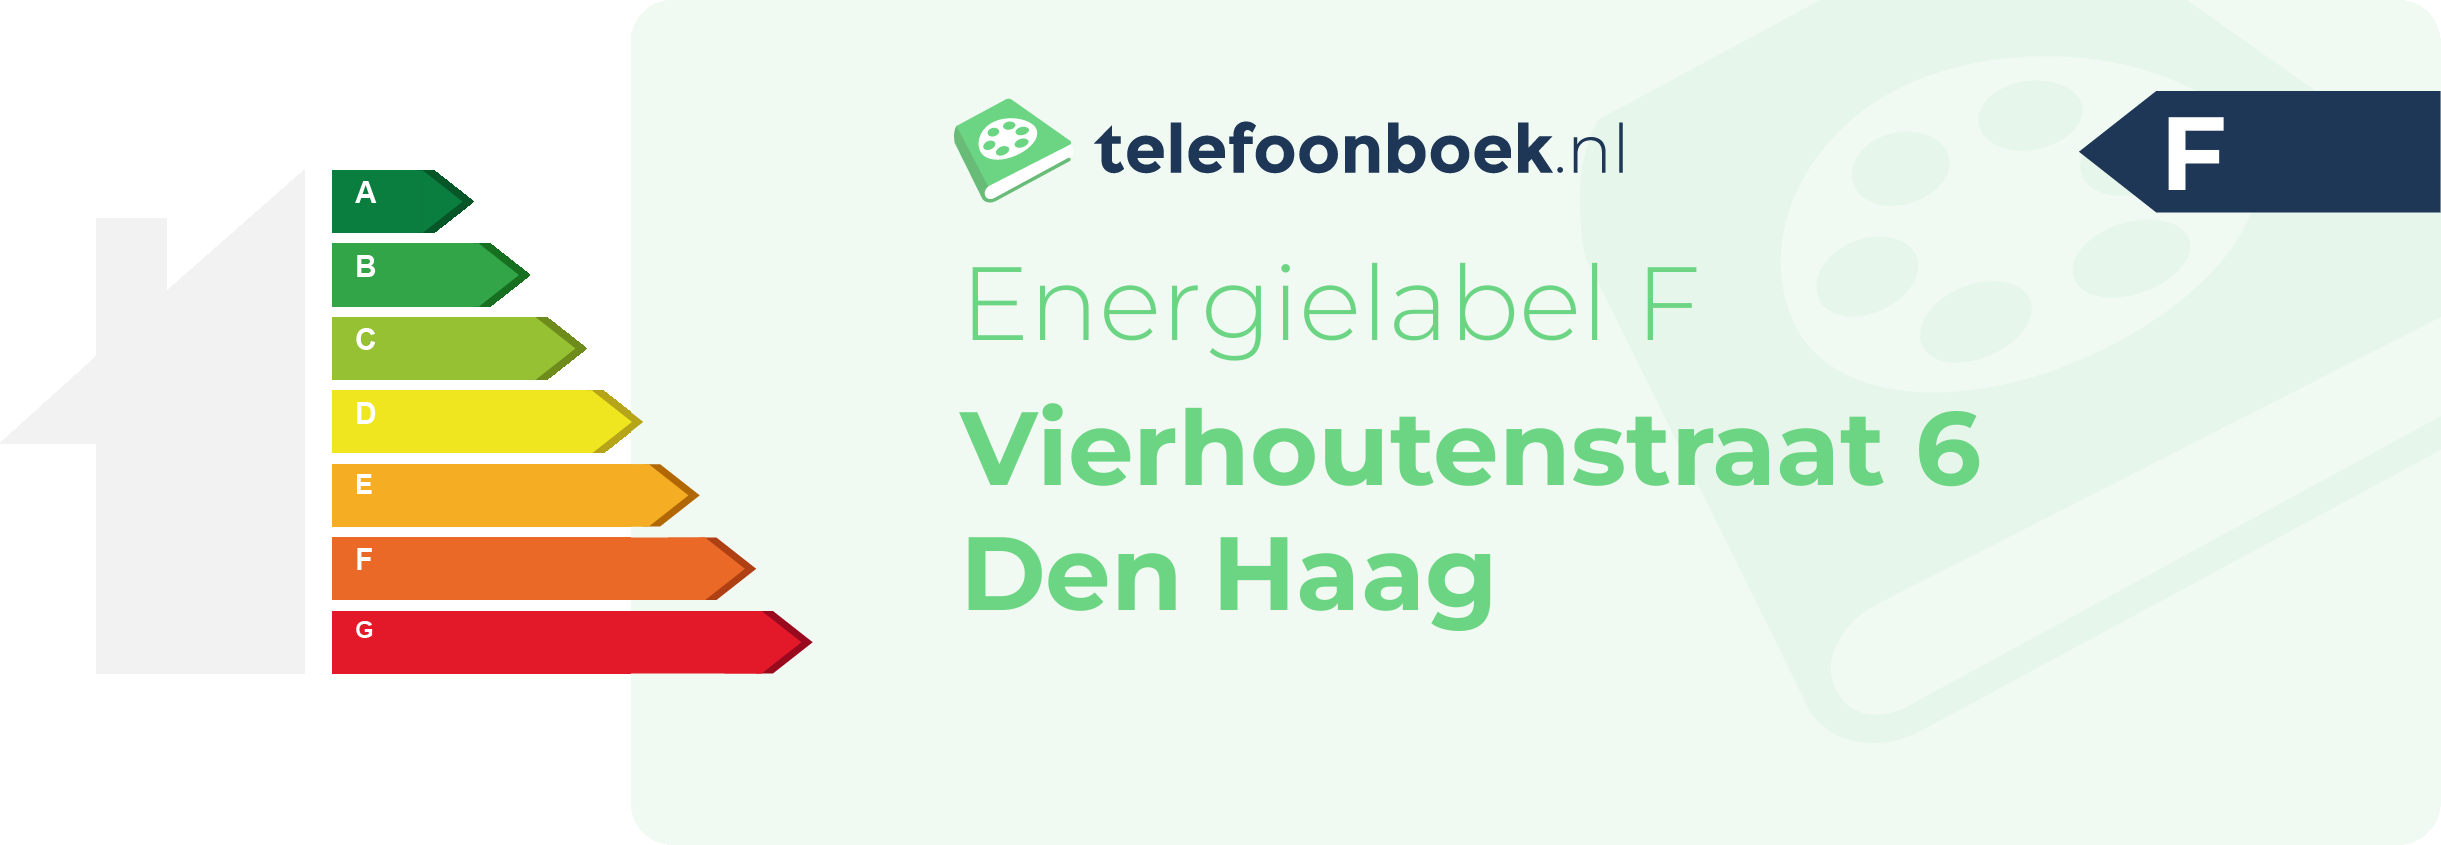 Energielabel Vierhoutenstraat 6 Den Haag